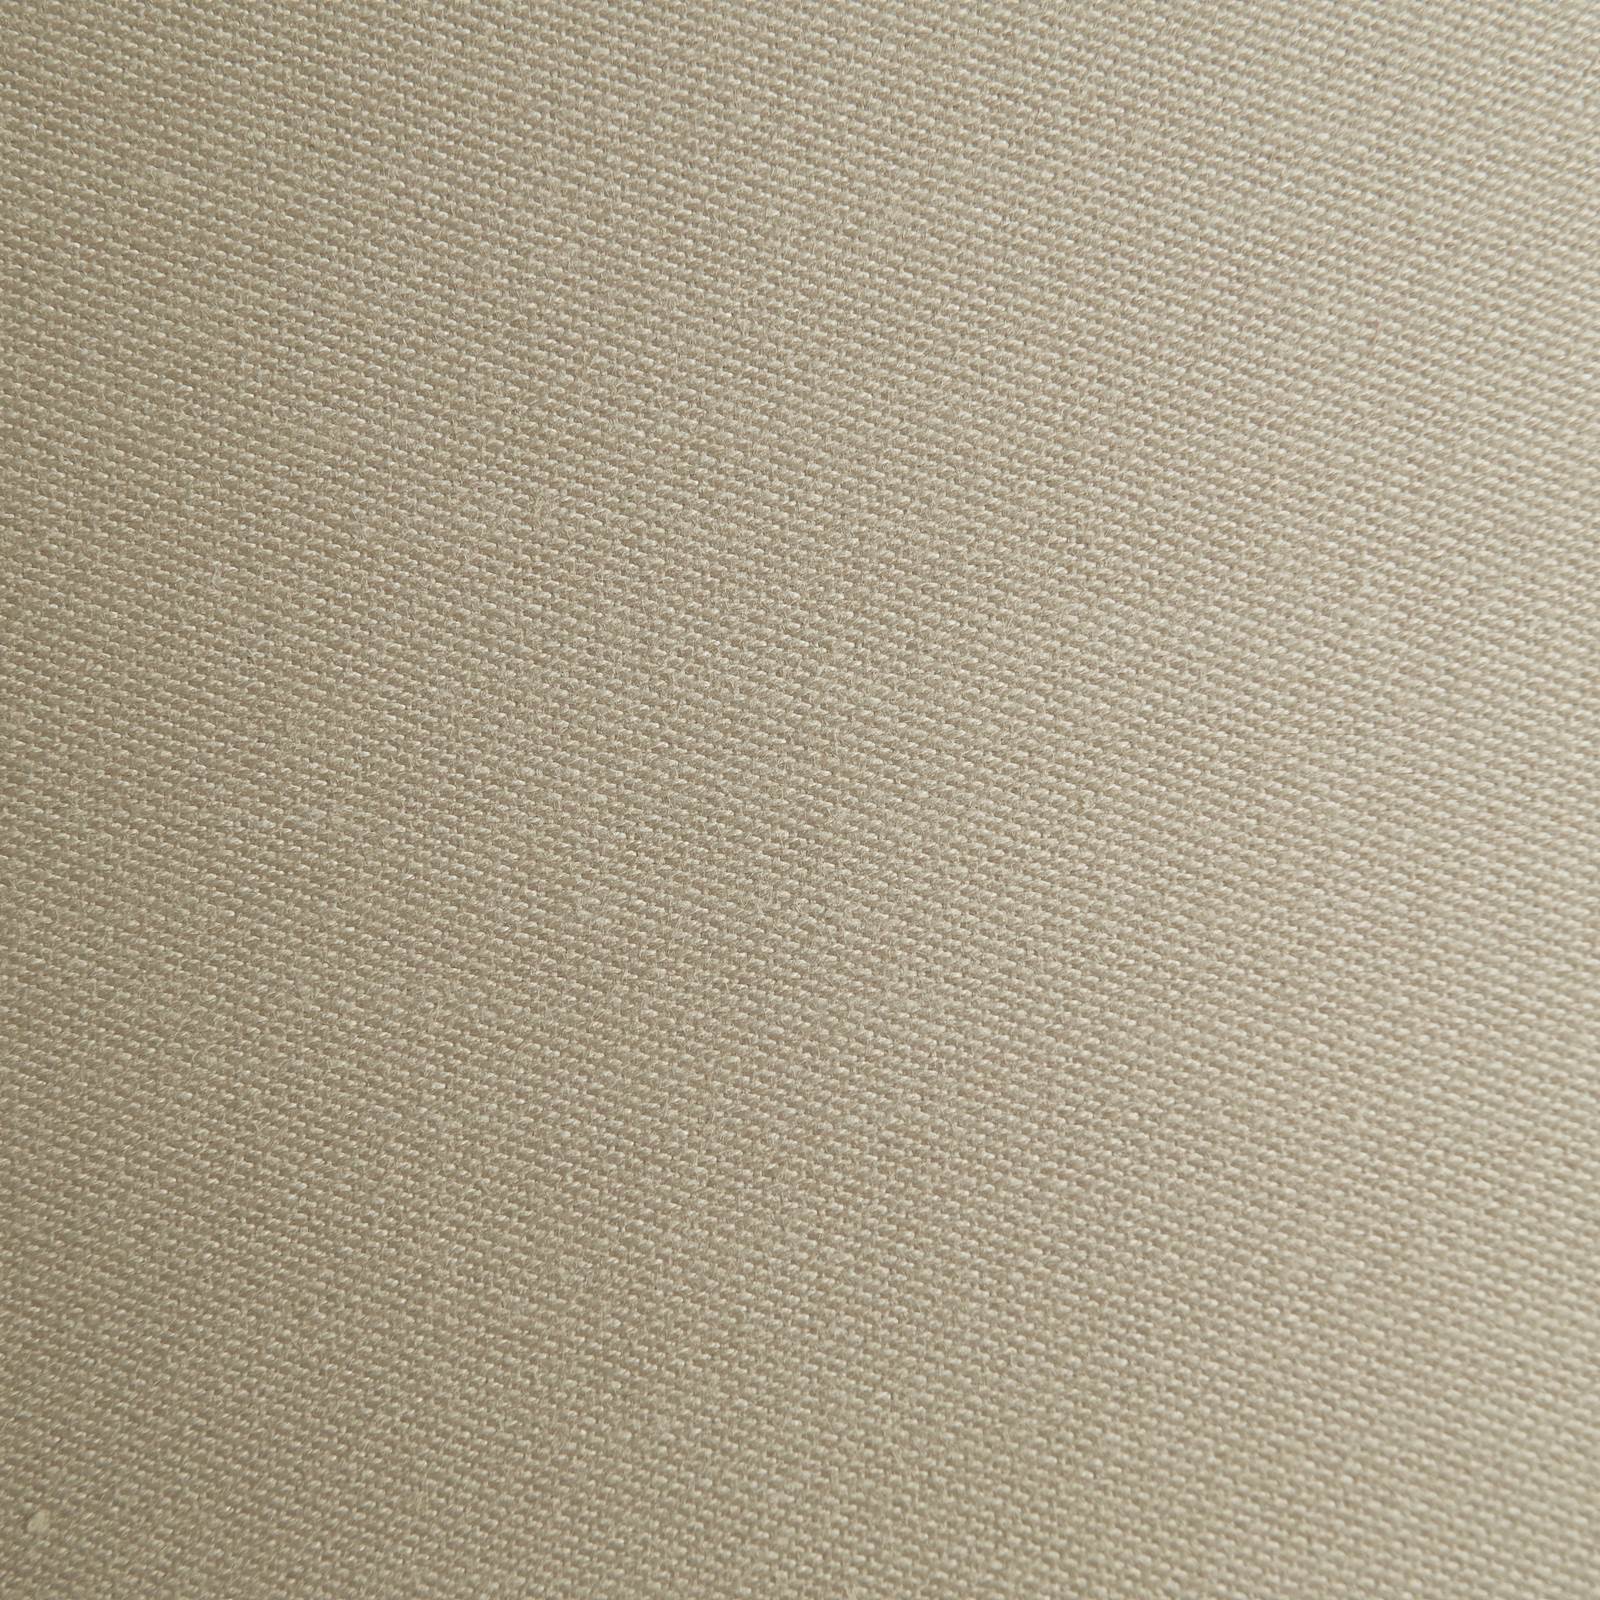 Vera - tecido damasco de duas camadas - coloração Indanthren® (pedra)